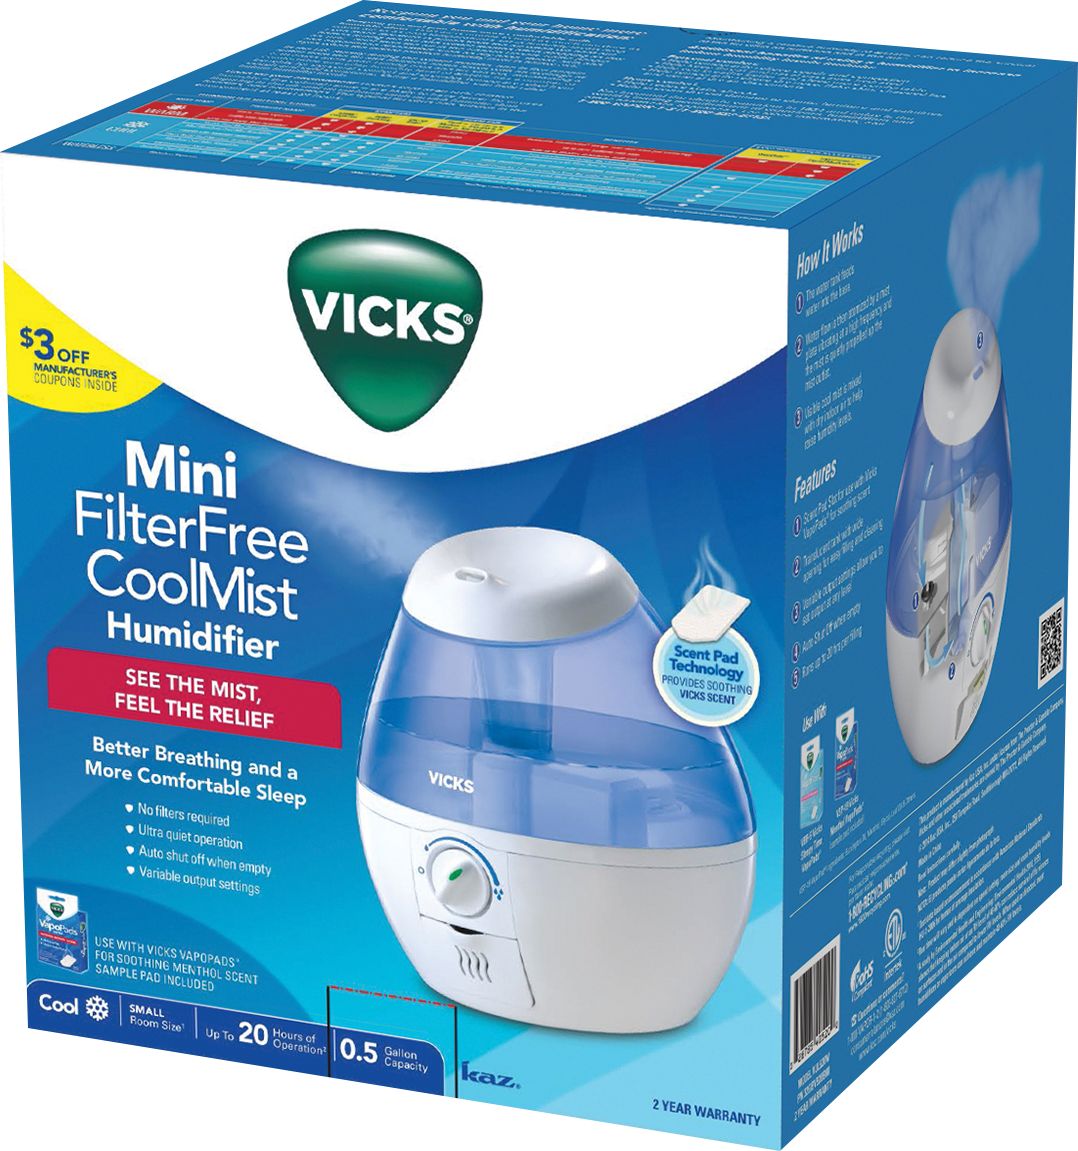 Vicks - 0.5 Gal. Mini Filter Free Cool Mist Humidifier - Blue_3